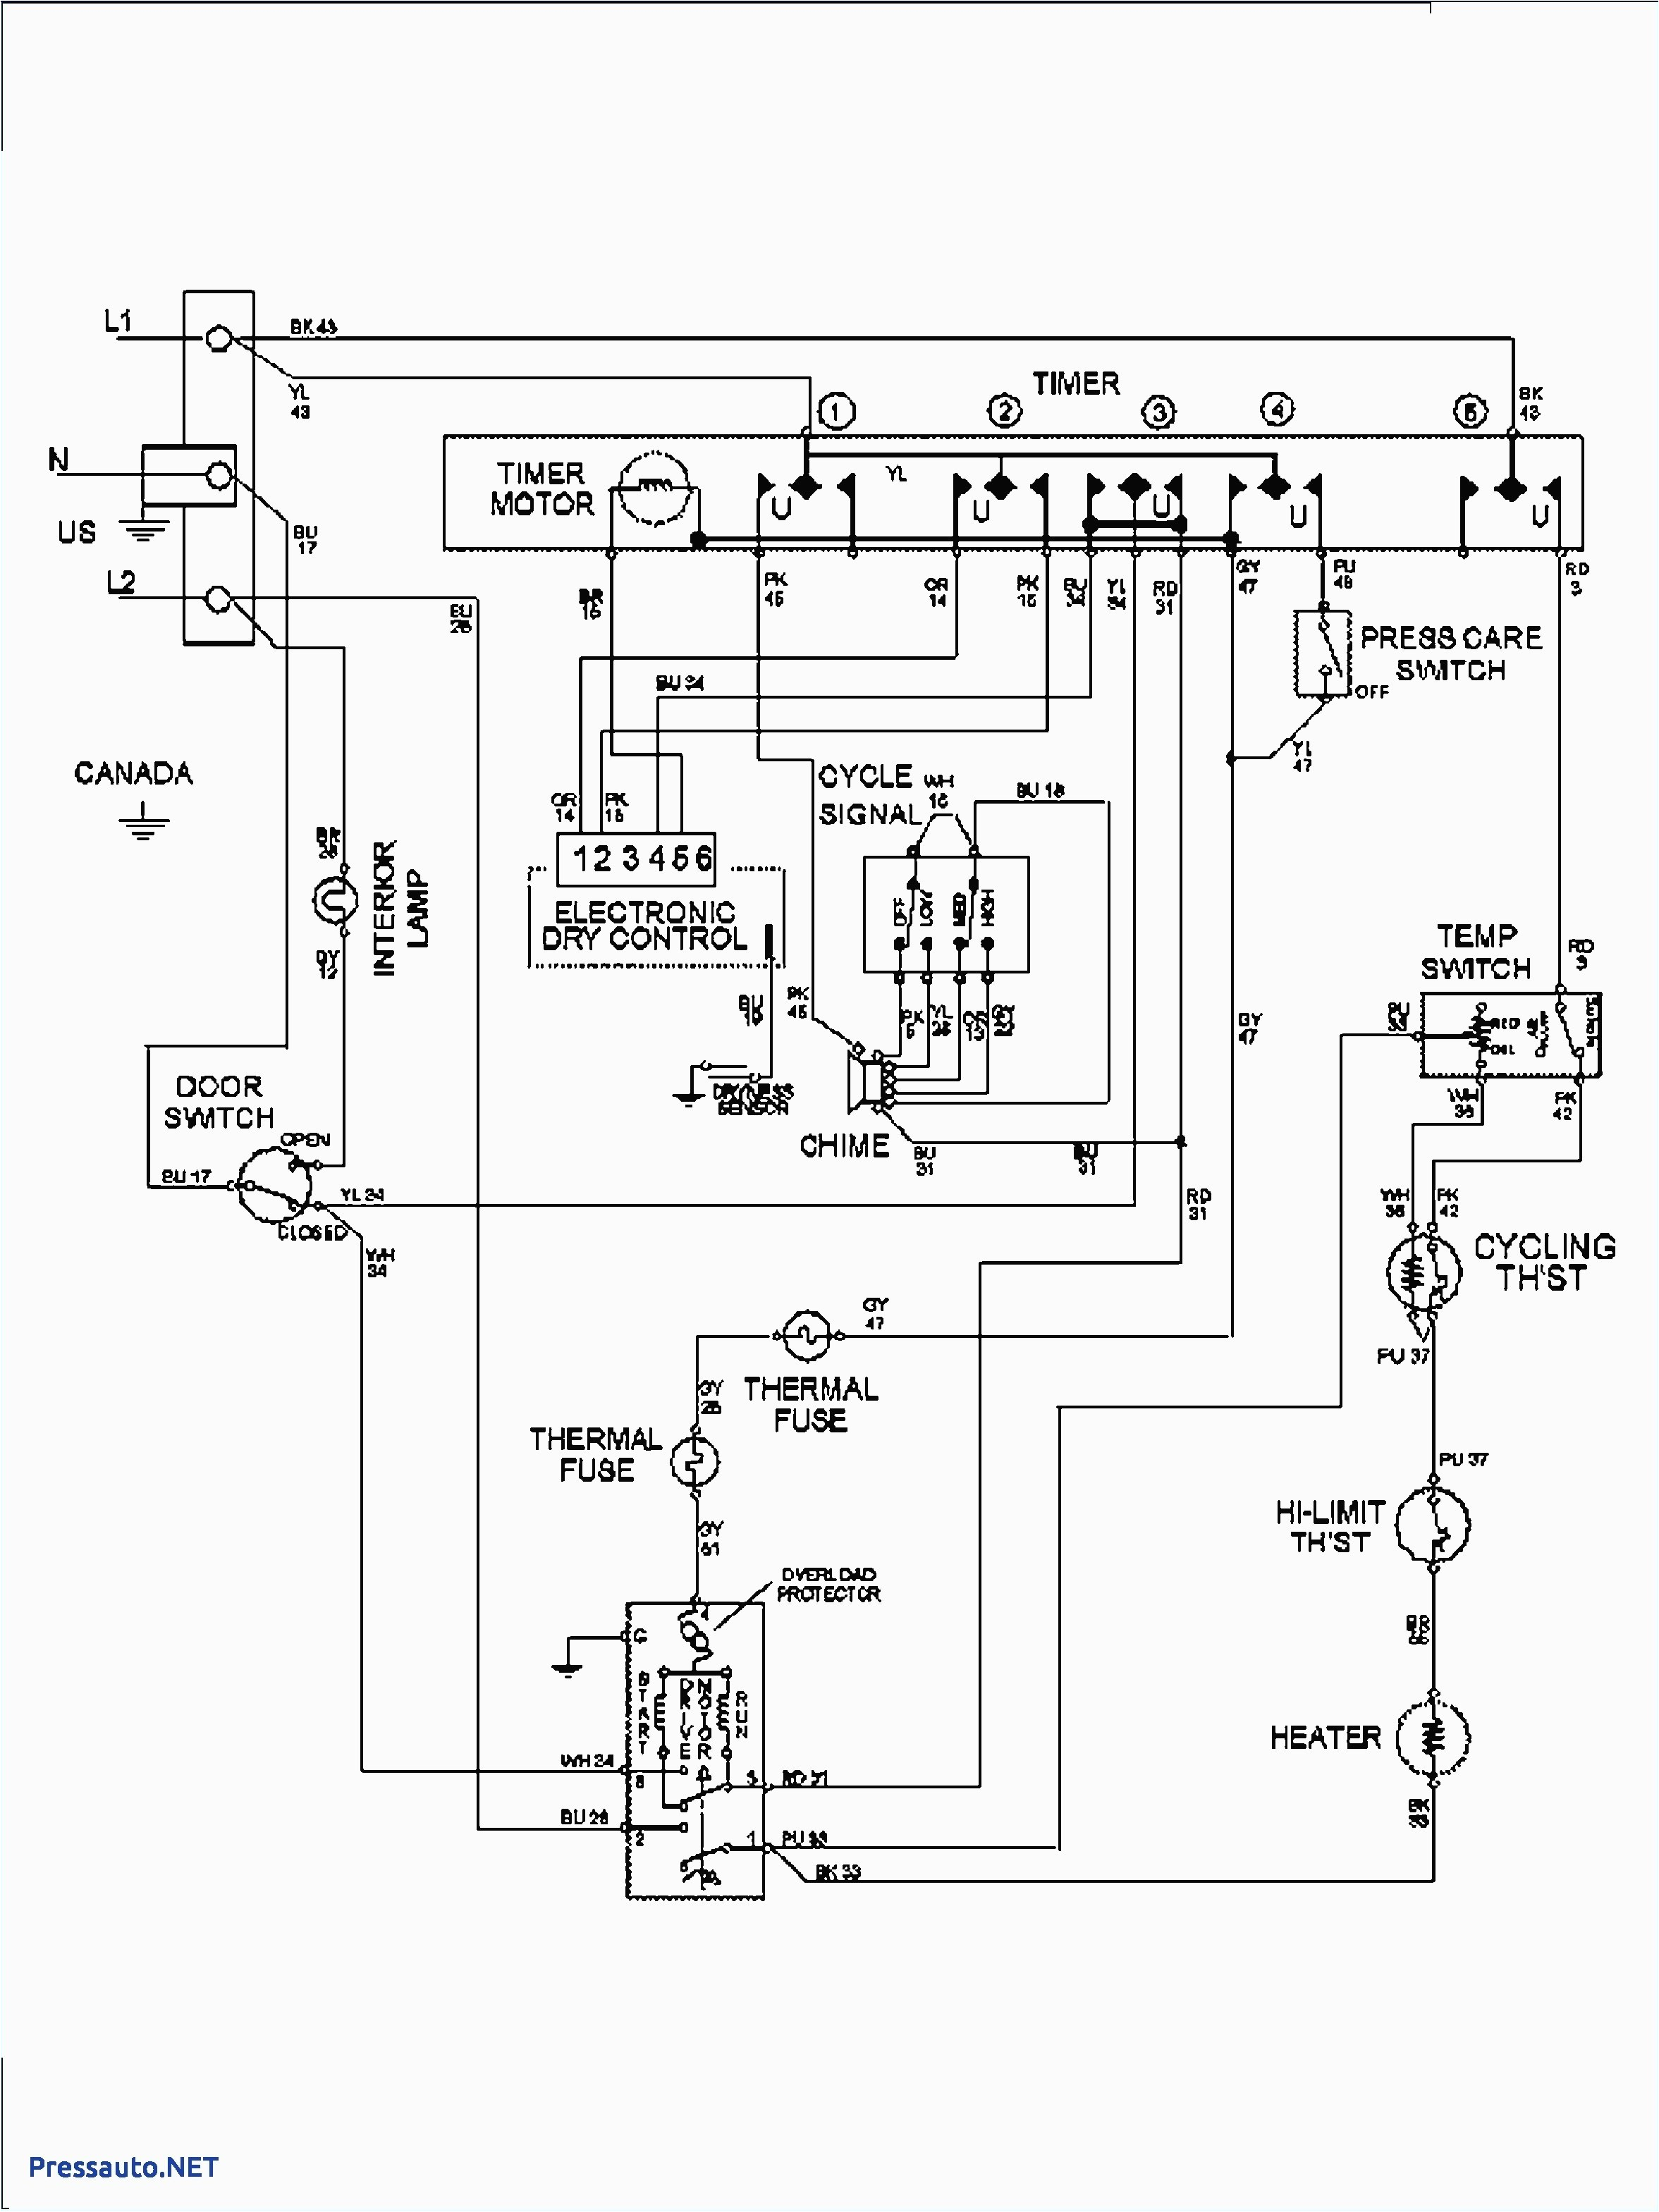 whirlpool dryer wiring schematic